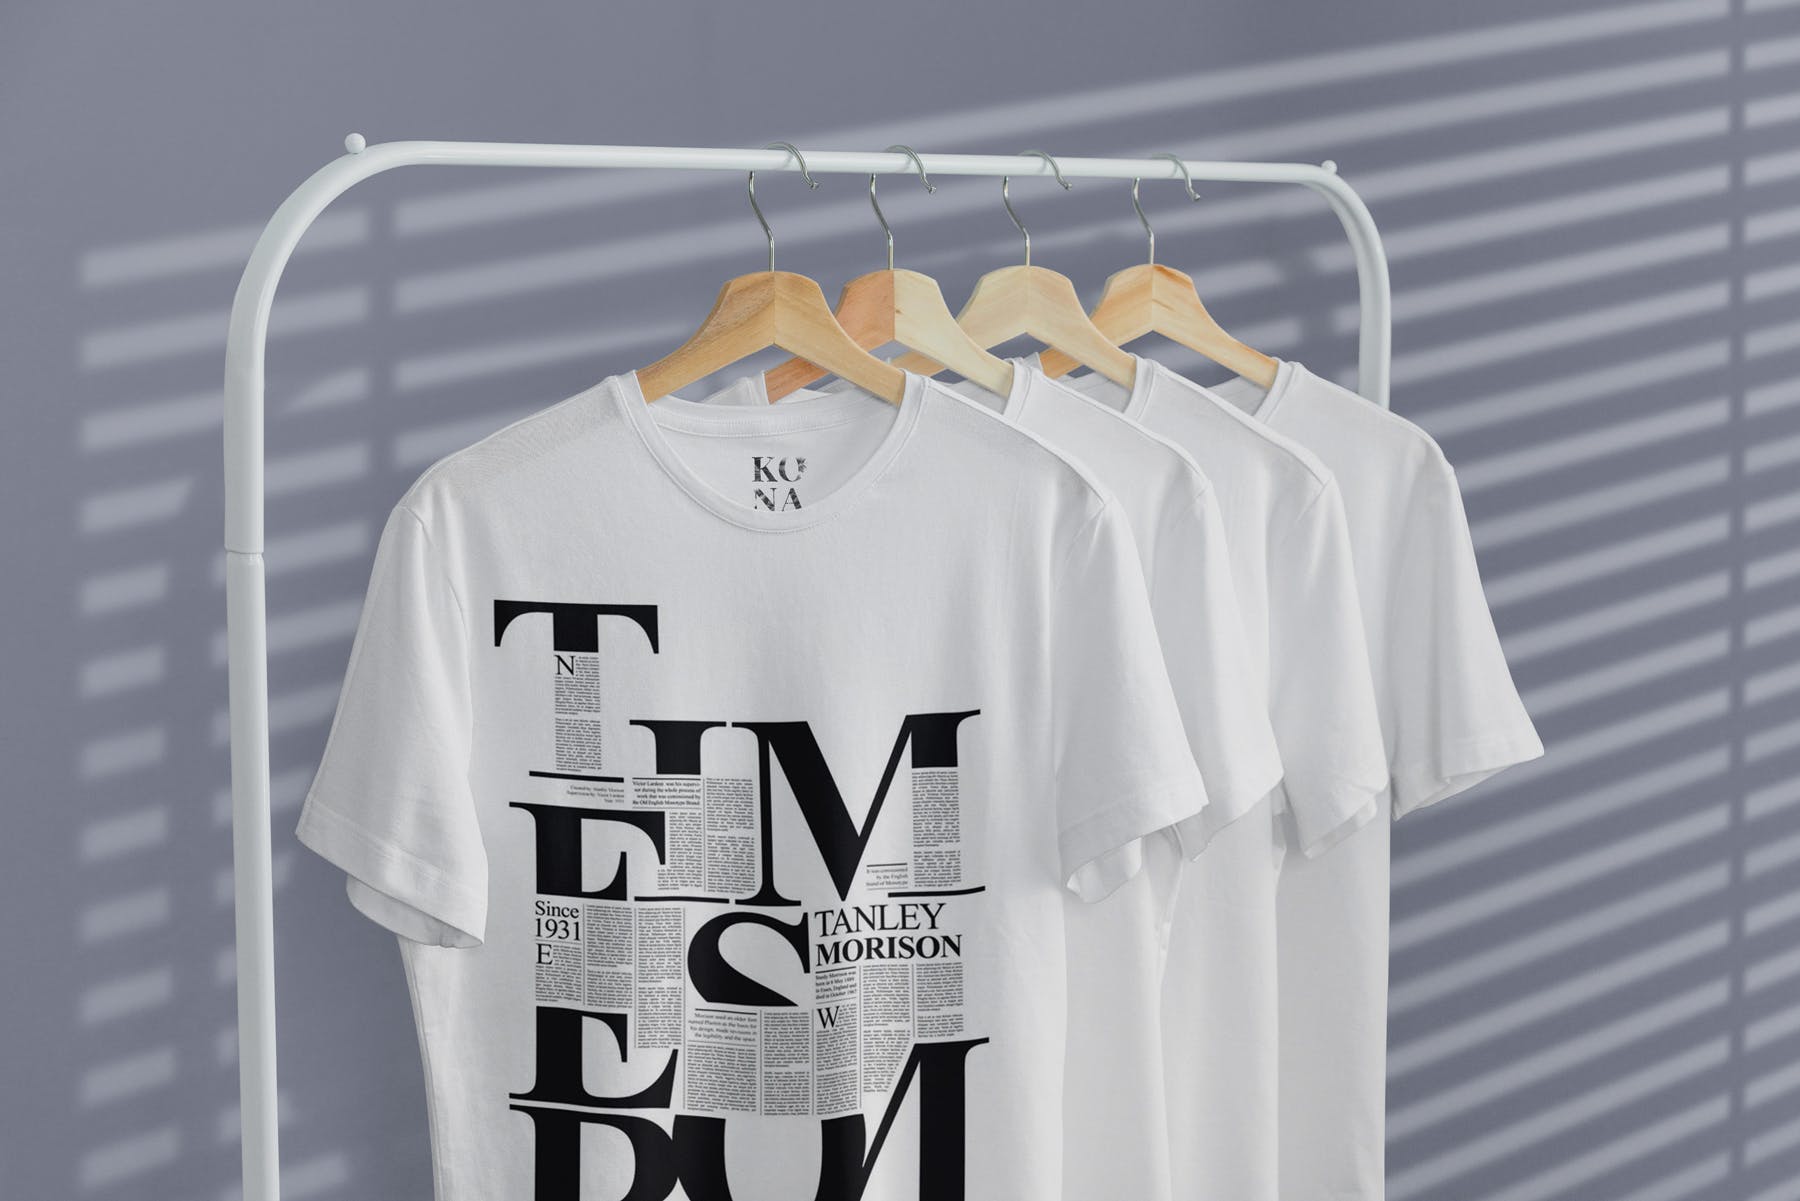 简易晾衣架T恤设计效果图样机第一素材精选 T-Shirt Mock-Up on Hanger插图(4)